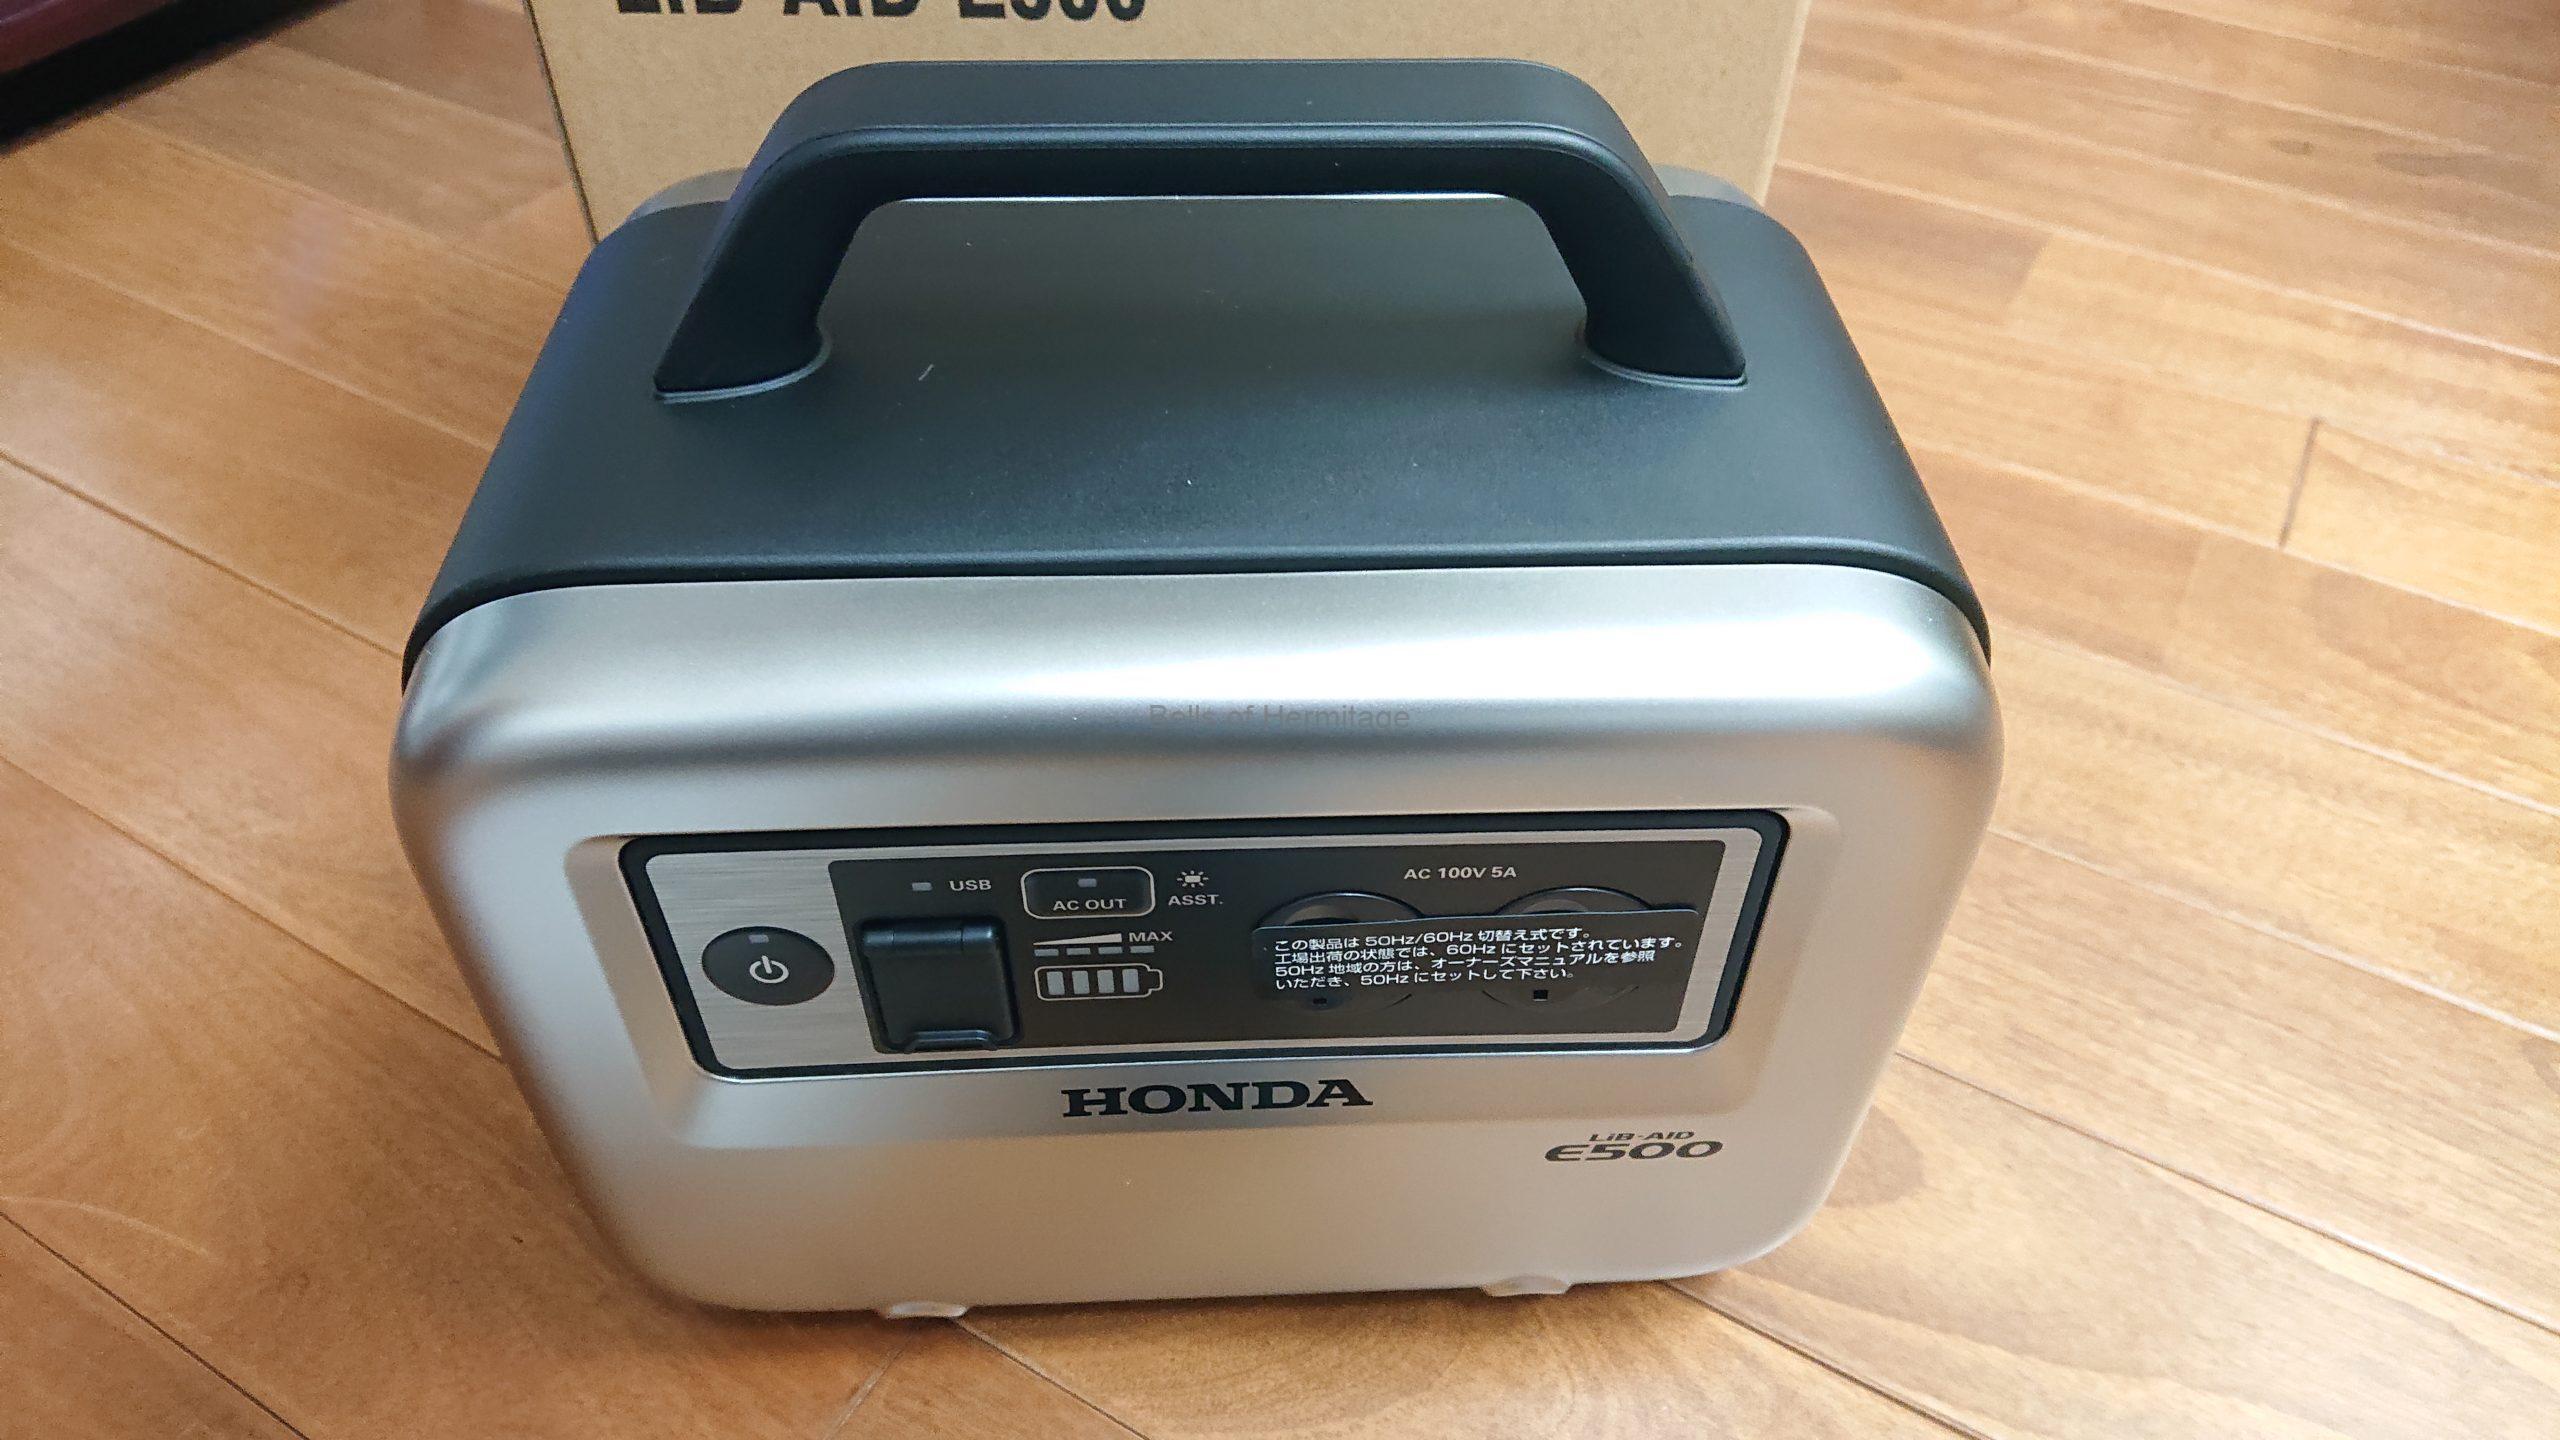 Honda Lib Aid E500 For Musicの動作音と計測 出力電圧 歪み率 Thd インバータノイズ Bells Of Hermitage エルミタージュの鐘